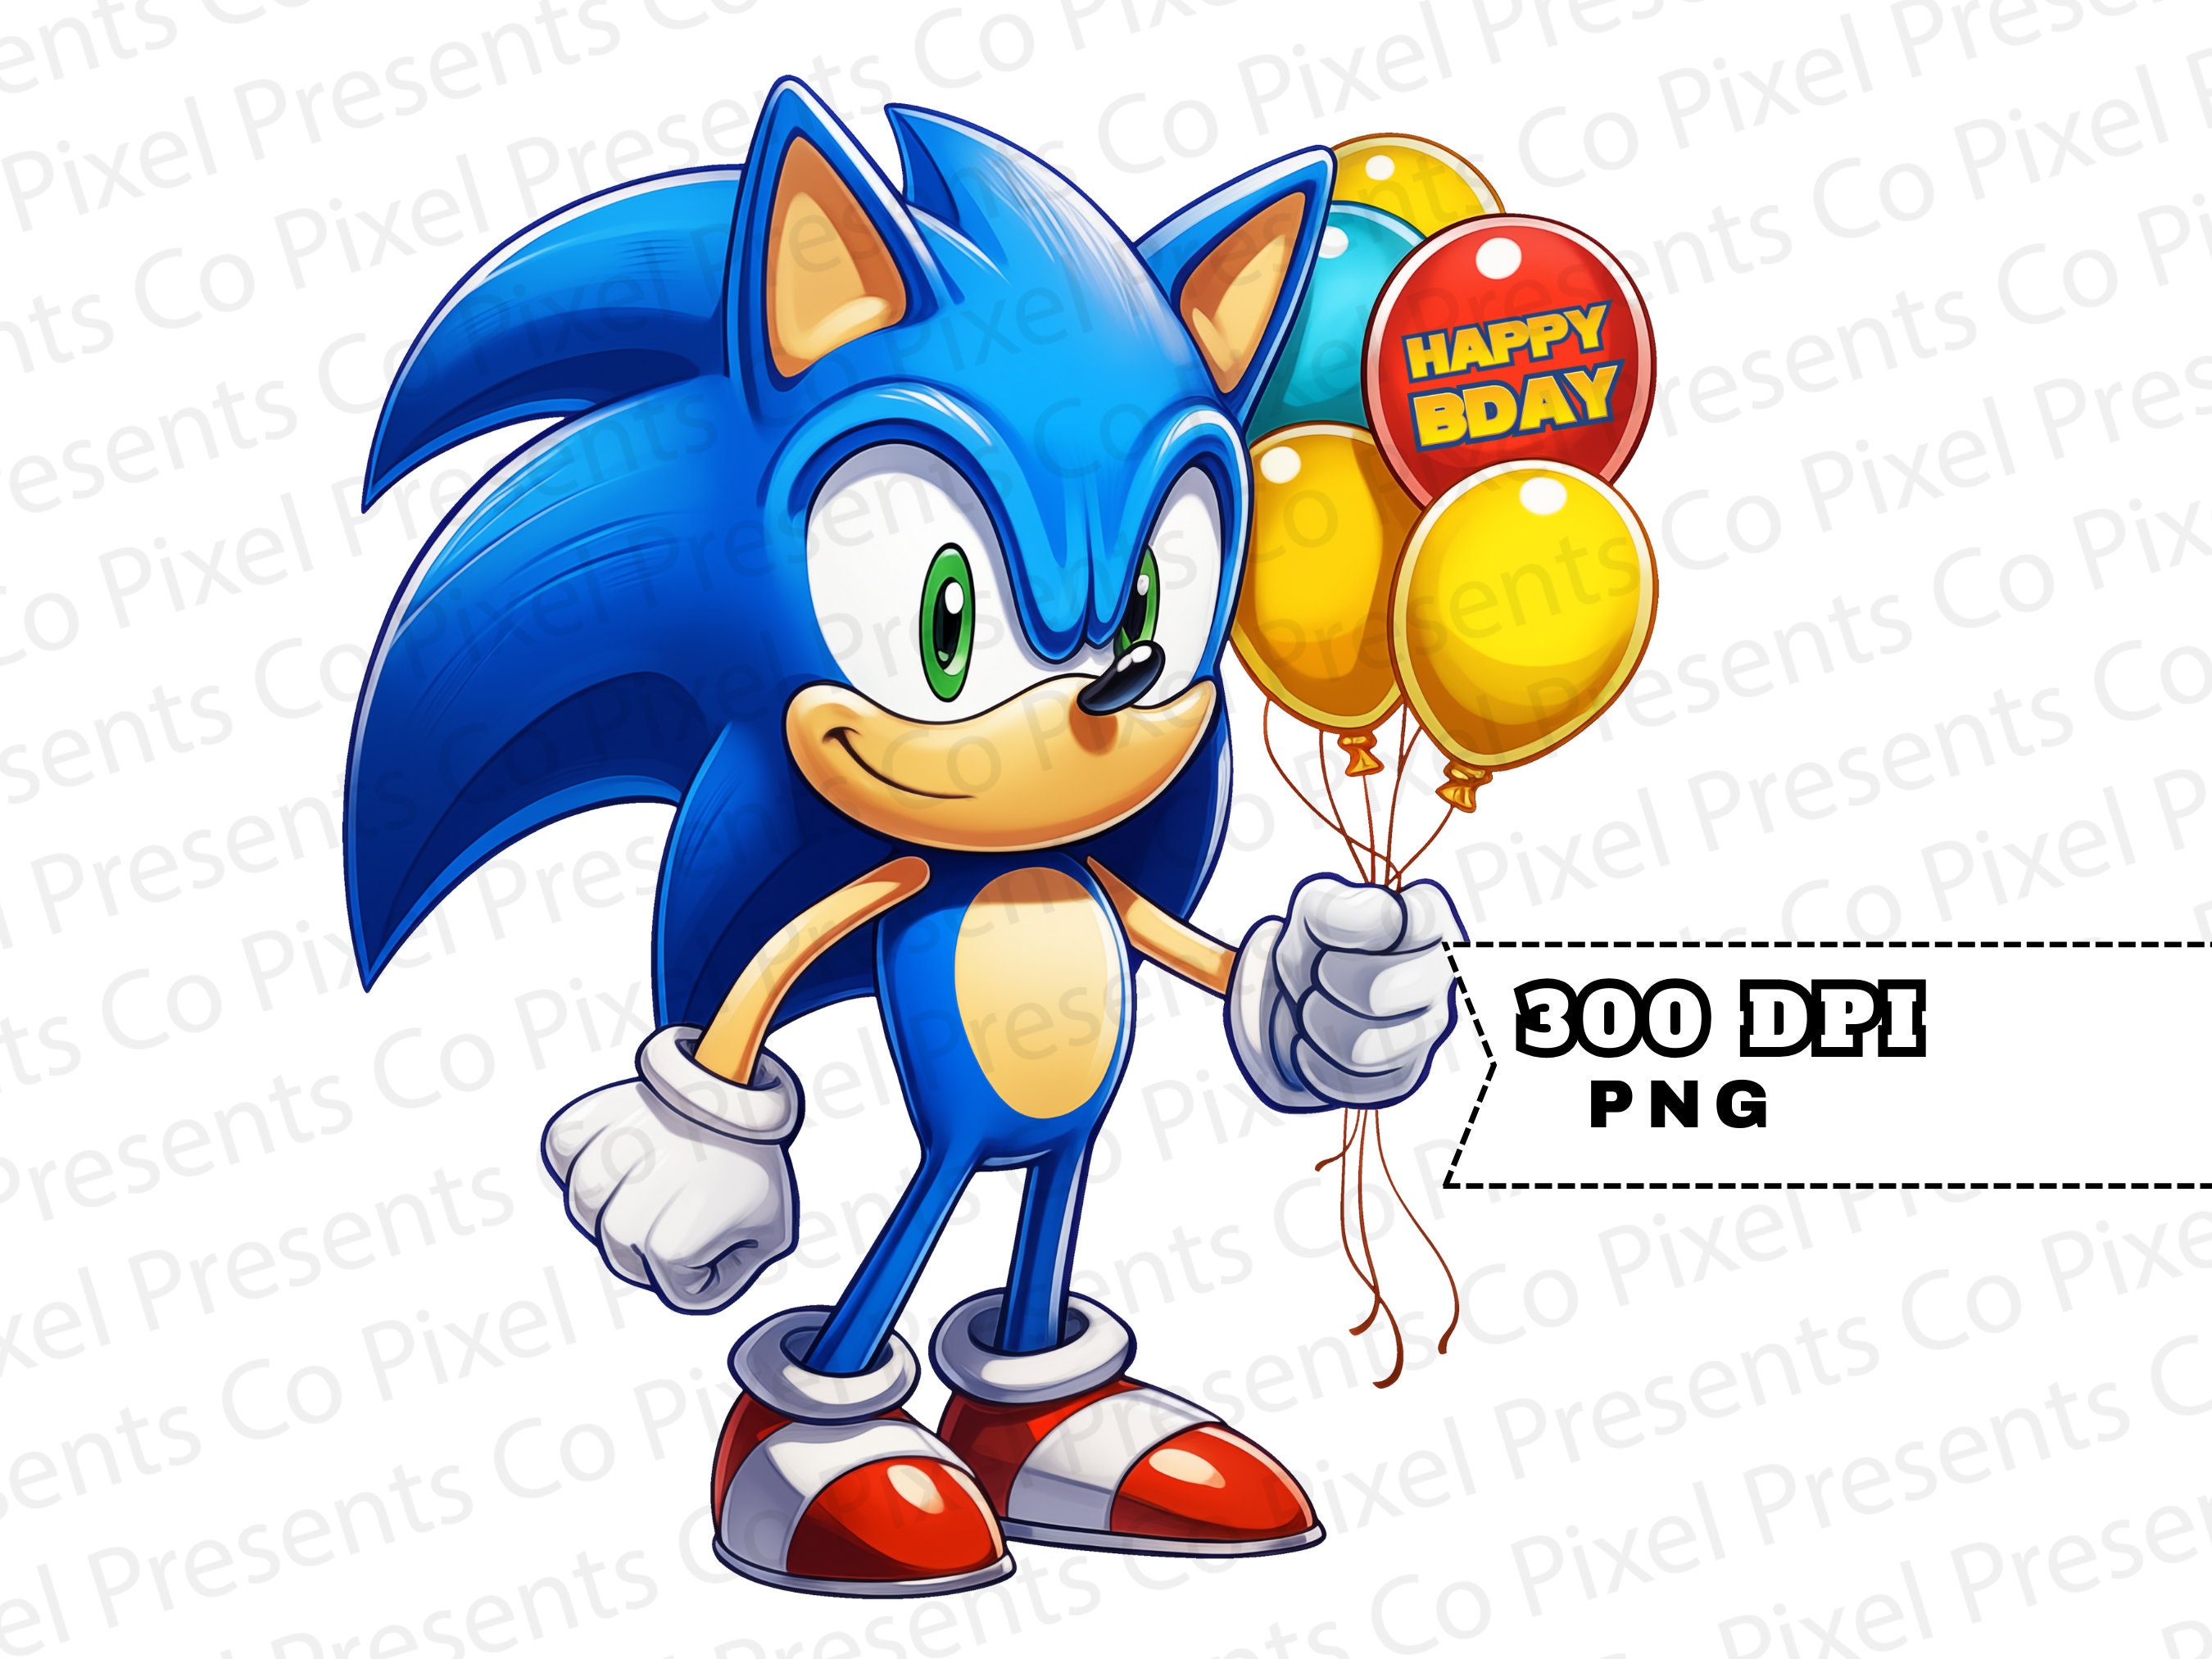 Ballon Tails de Sonic - Décorations Ballons Gameur 